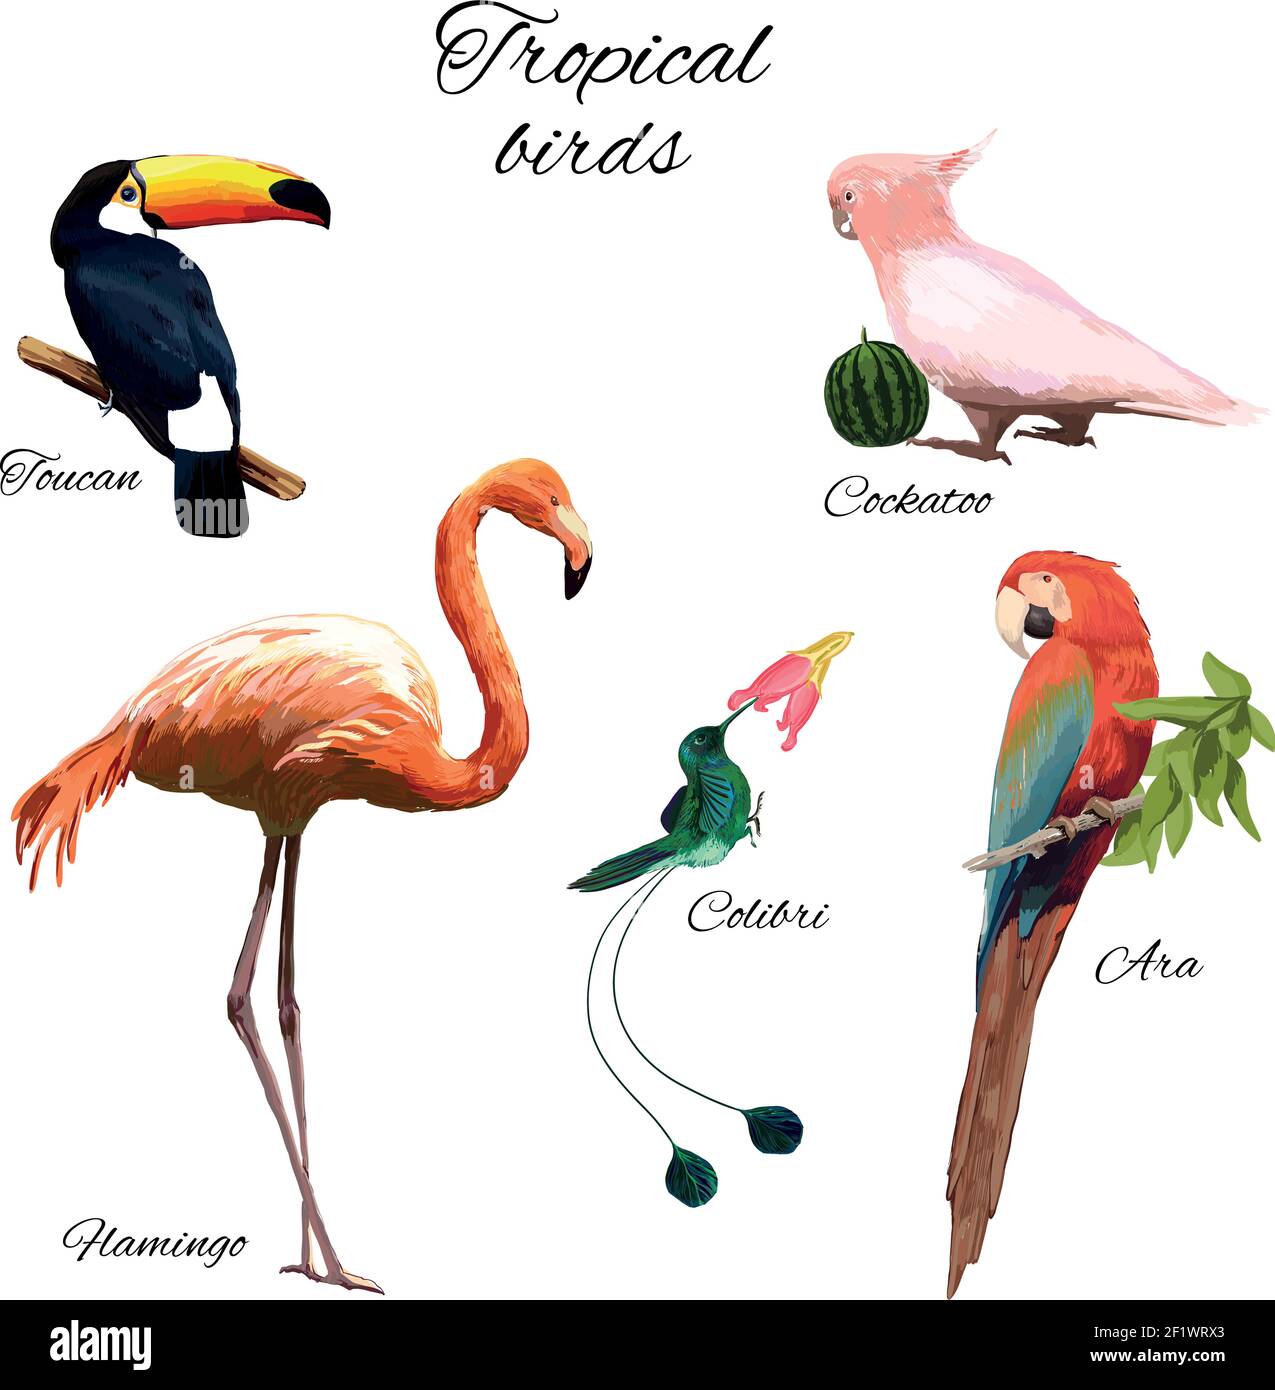 Illustration de la faune exotique colorée avec différents magnifiques oiseaux tropicaux blanc Illustration de Vecteur